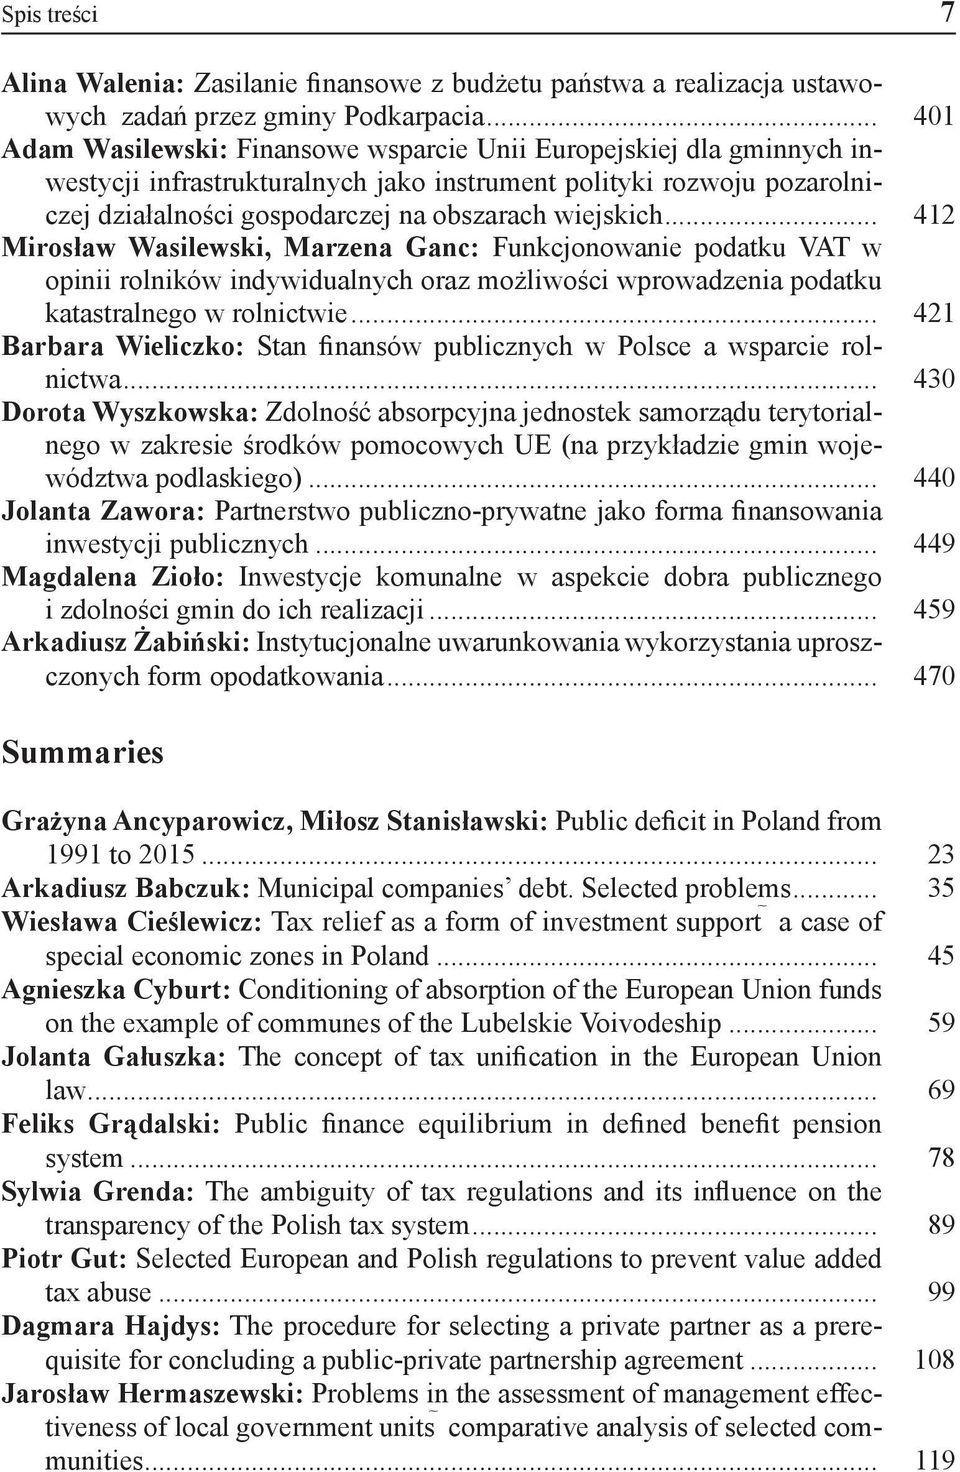 .. 412 Mirosław Wasilewski, Marzena Ganc: Funkcjonowanie podatku VAT w opinii rolników indywidualnych oraz możliwości wprowadzenia podatku katastralnego w rolnictwie.